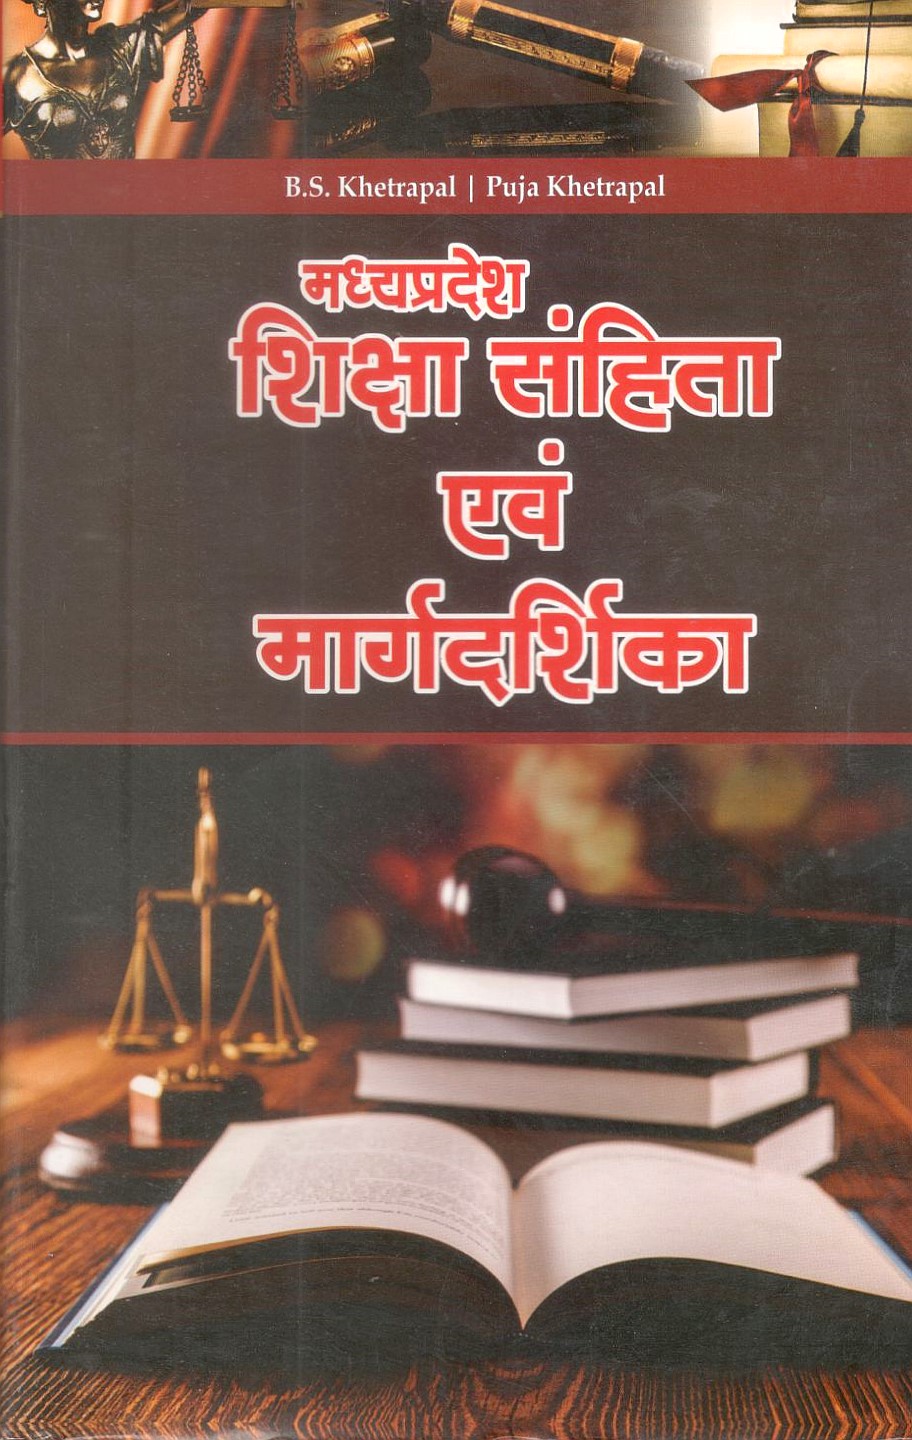 मध्य प्रदेश शिक्षा संहिता एवं मार्गदर्शिका / Madhya Pradesh Education Code and Guide